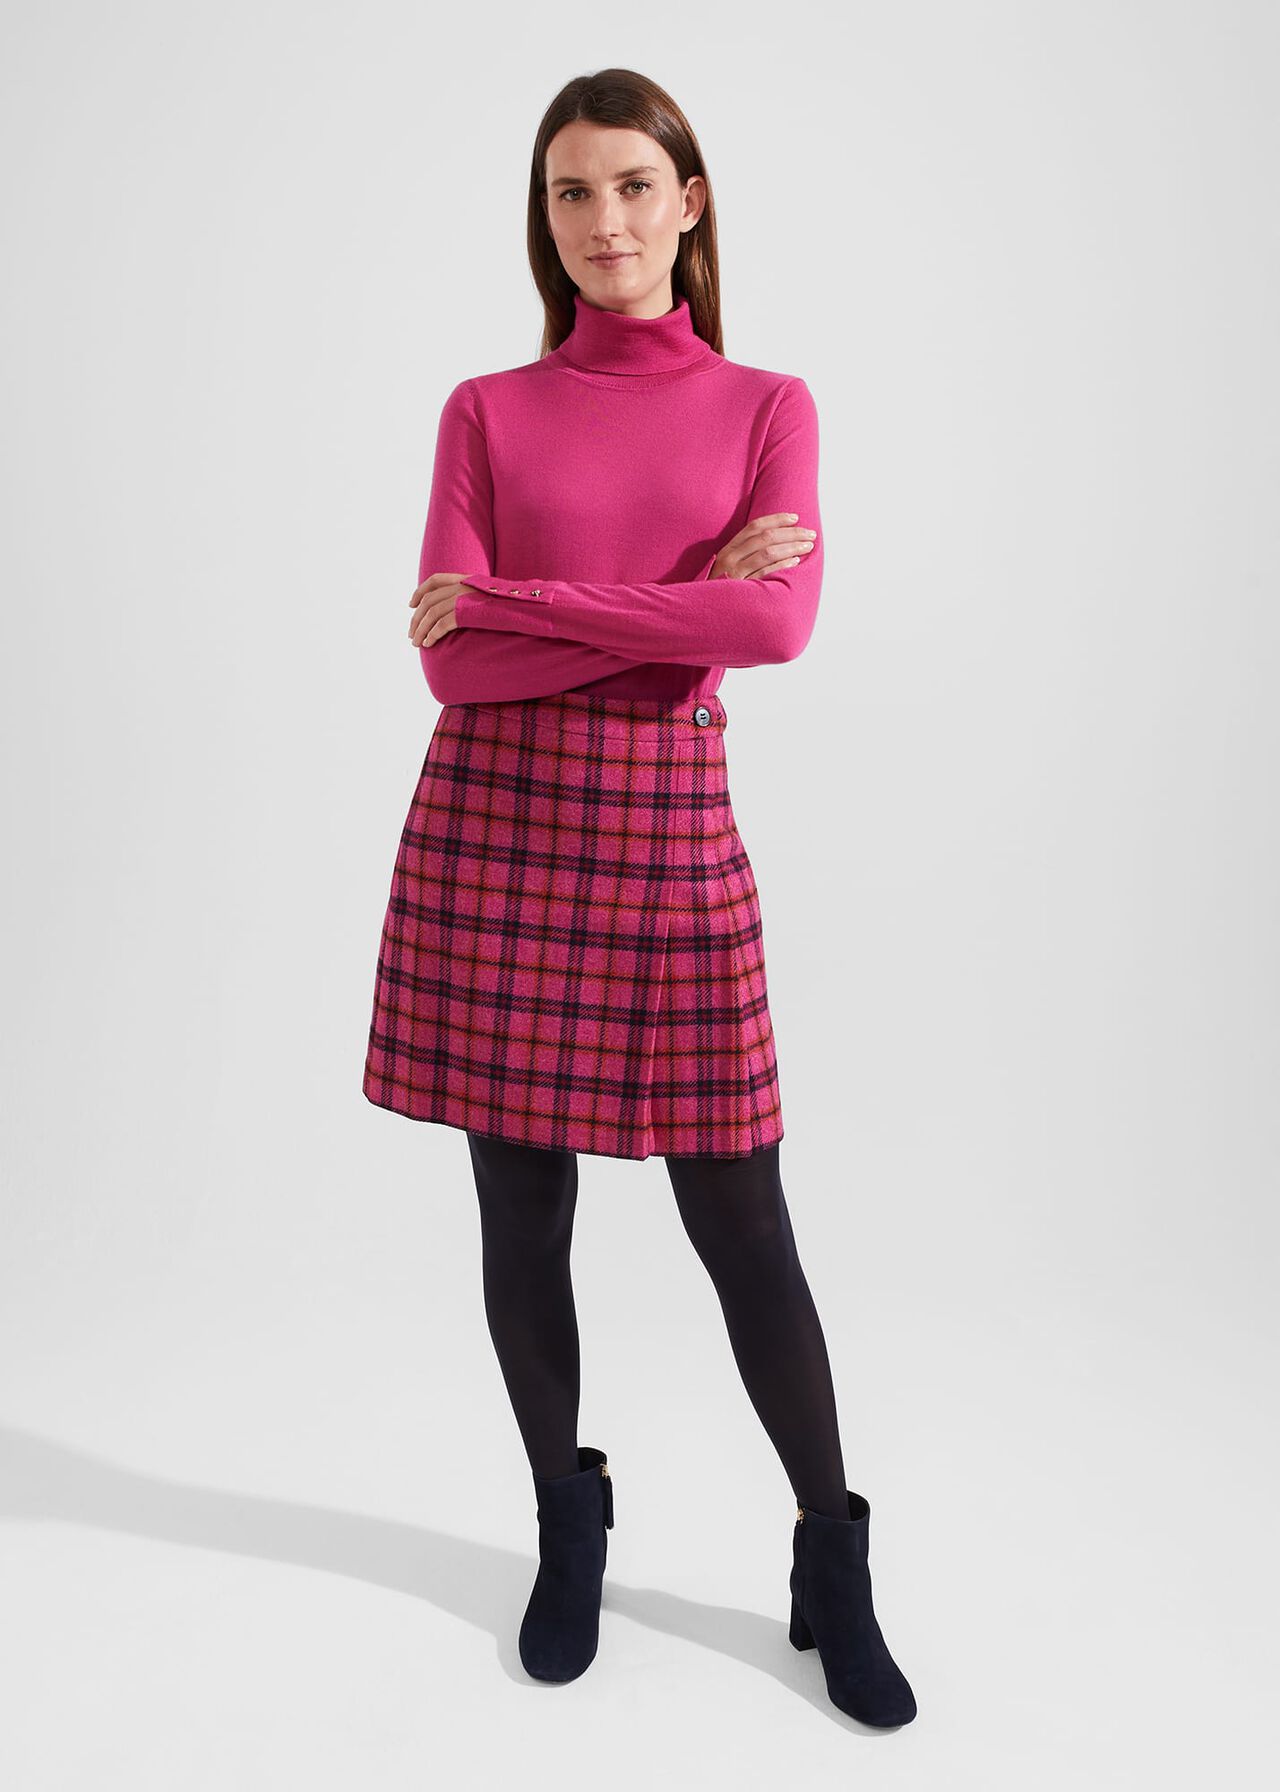 Lara Merino Wool Roll Neck Sweater, Pink, hi-res